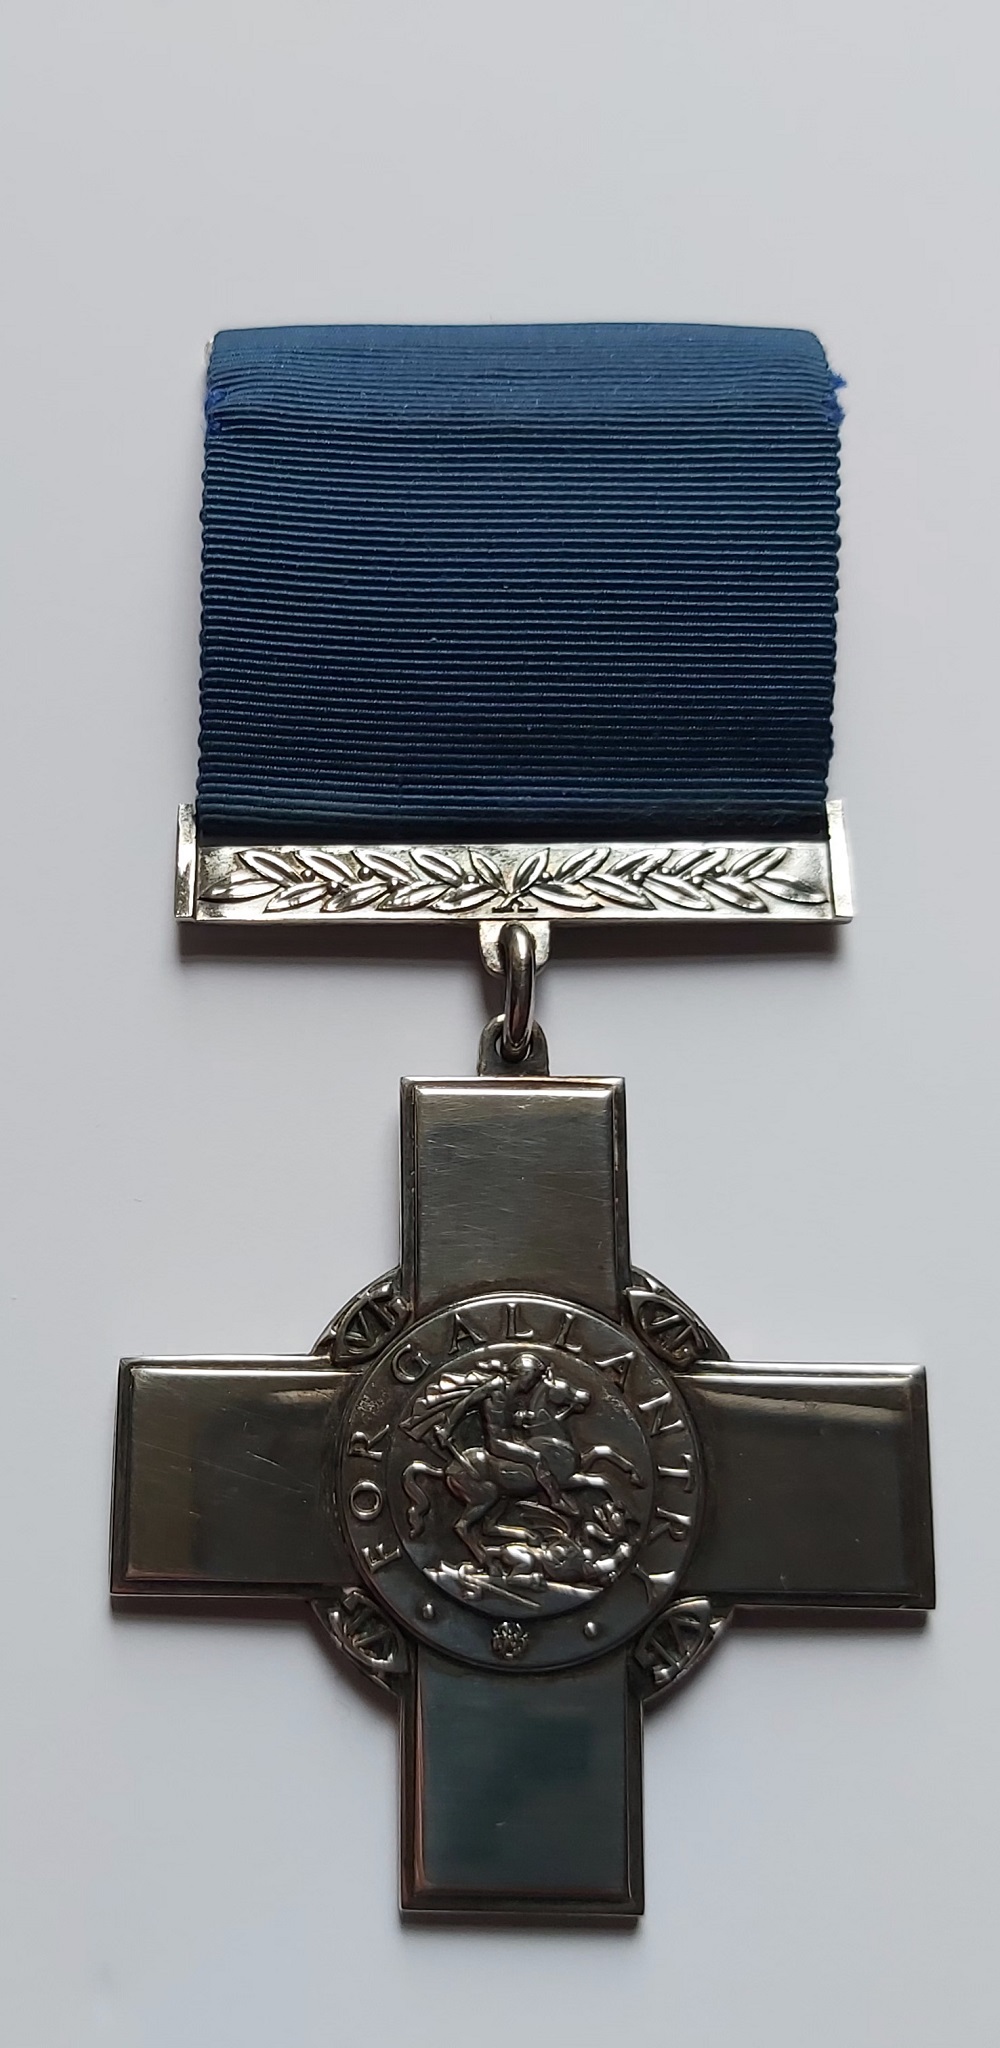 George Cross medal